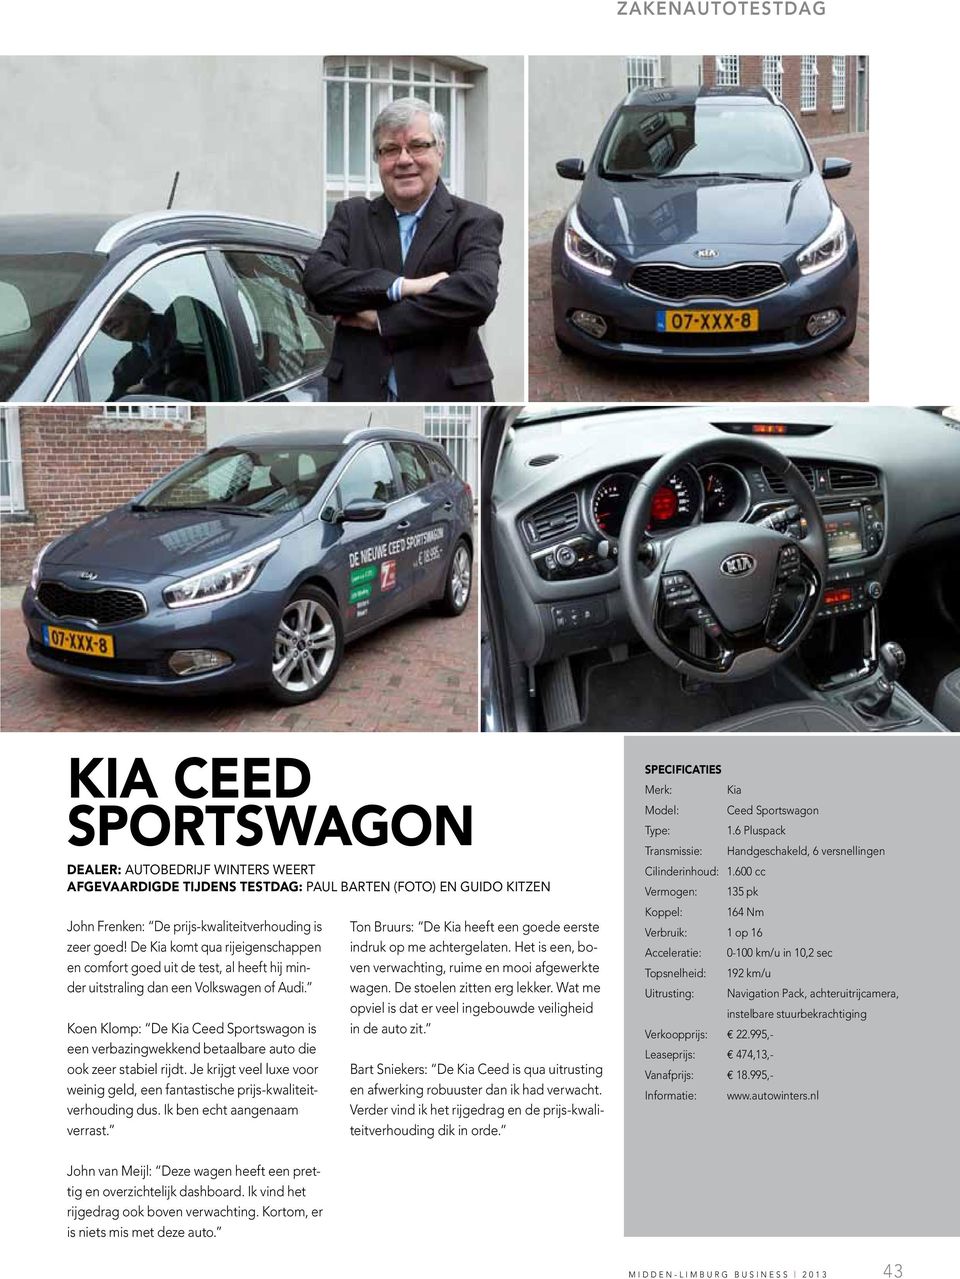 Koen Klomp: De Kia Ceed Sportswagon is een verbazingwekkend betaalbare auto die ook zeer stabiel rijdt. Je krijgt veel luxe voor weinig geld, een fantastische prijs-kwaliteitverhouding dus.